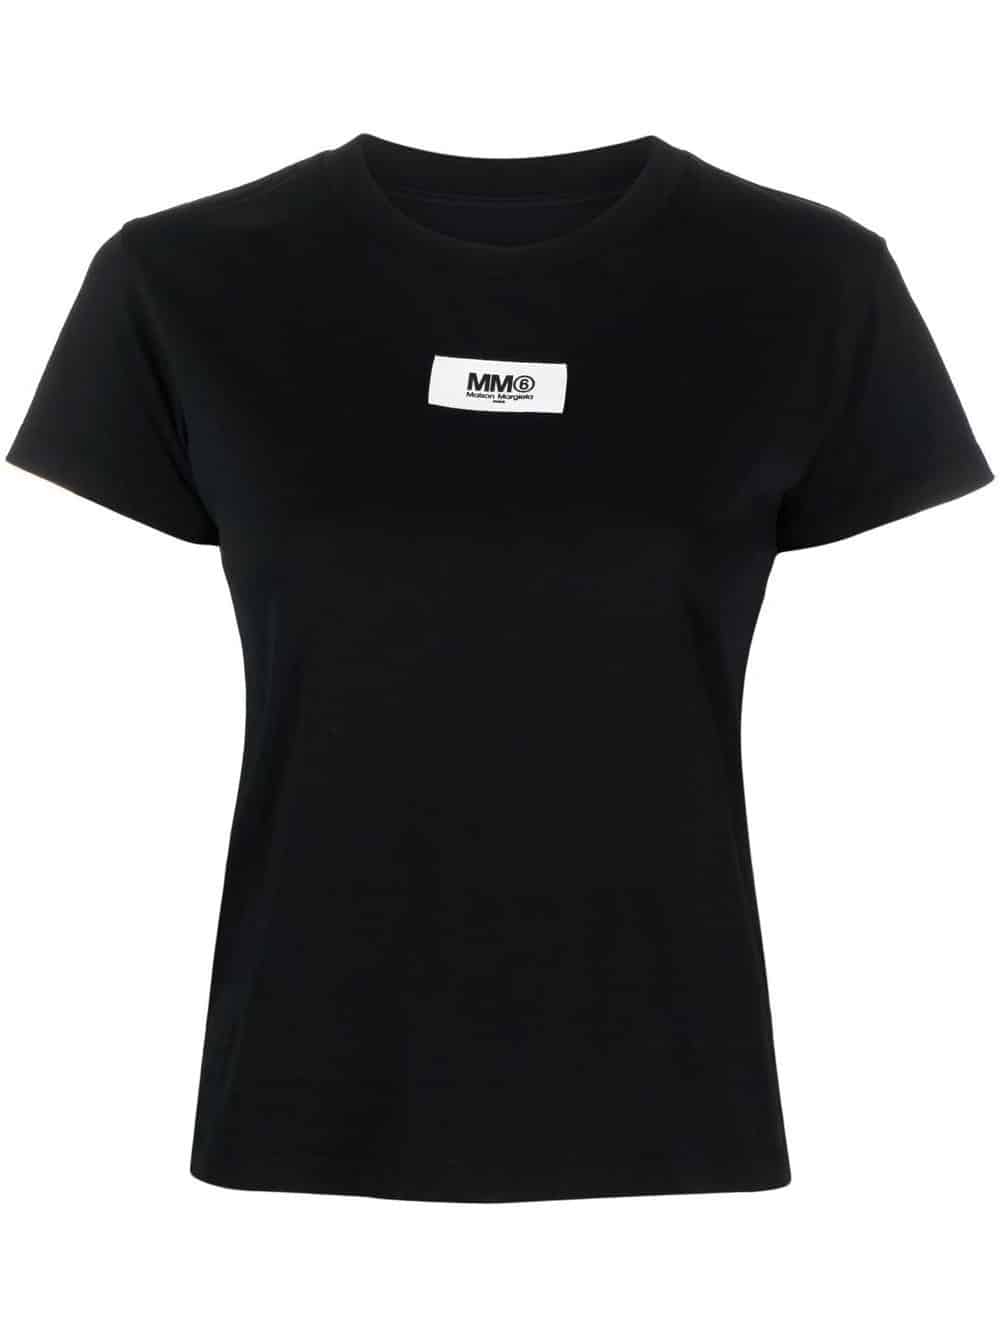 MM6 Maison Margiela logo-print cotton T-shirt (Size: M)